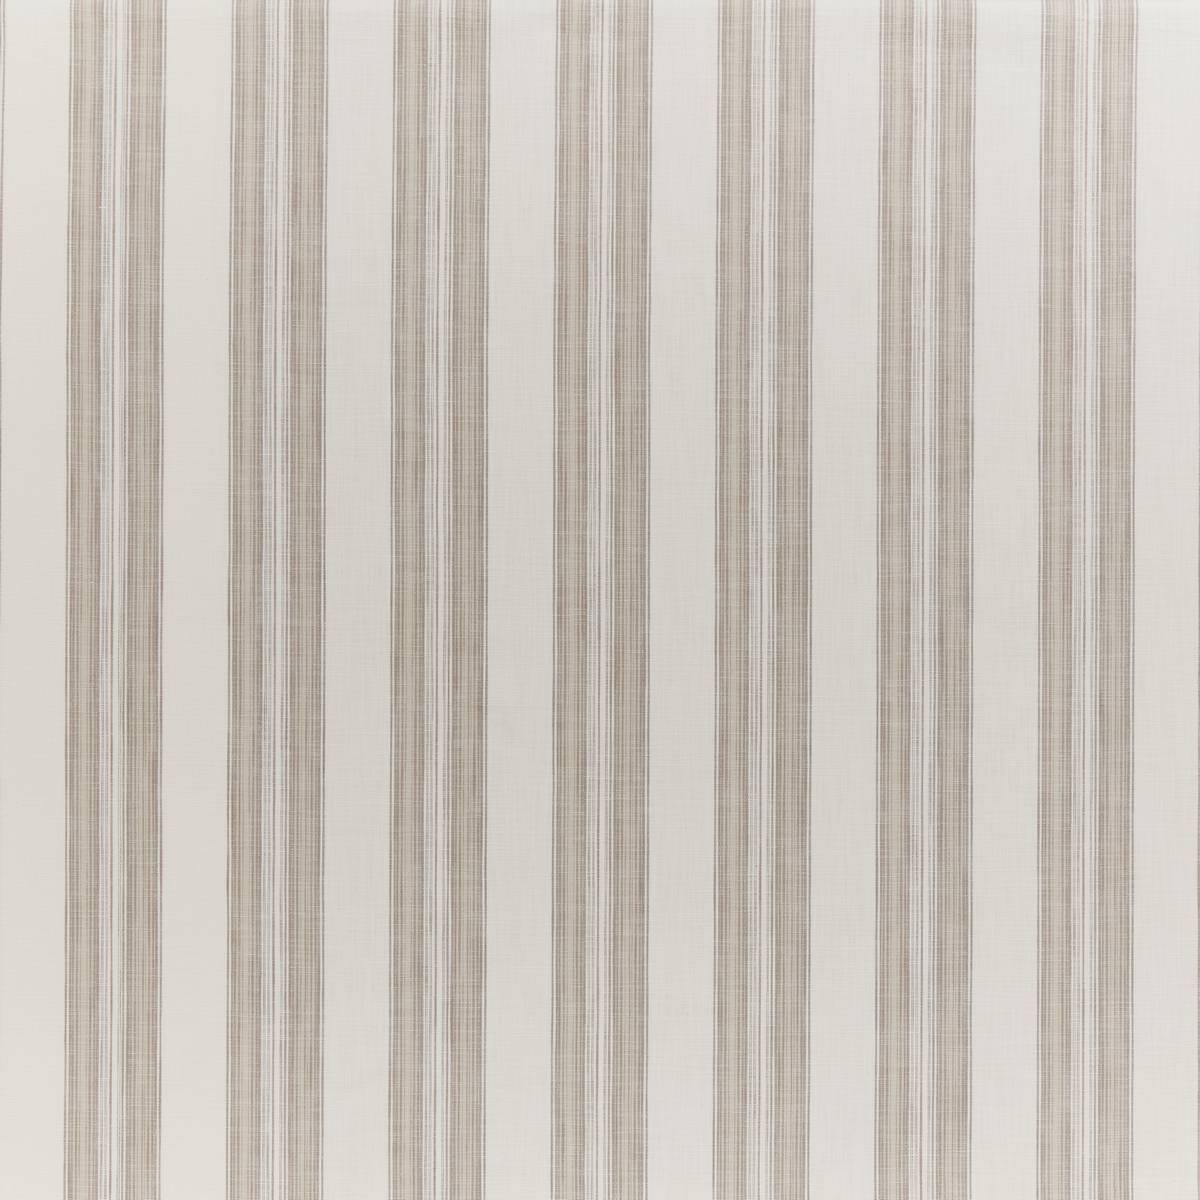 Barley Stripe Rye Fabric by iLiv